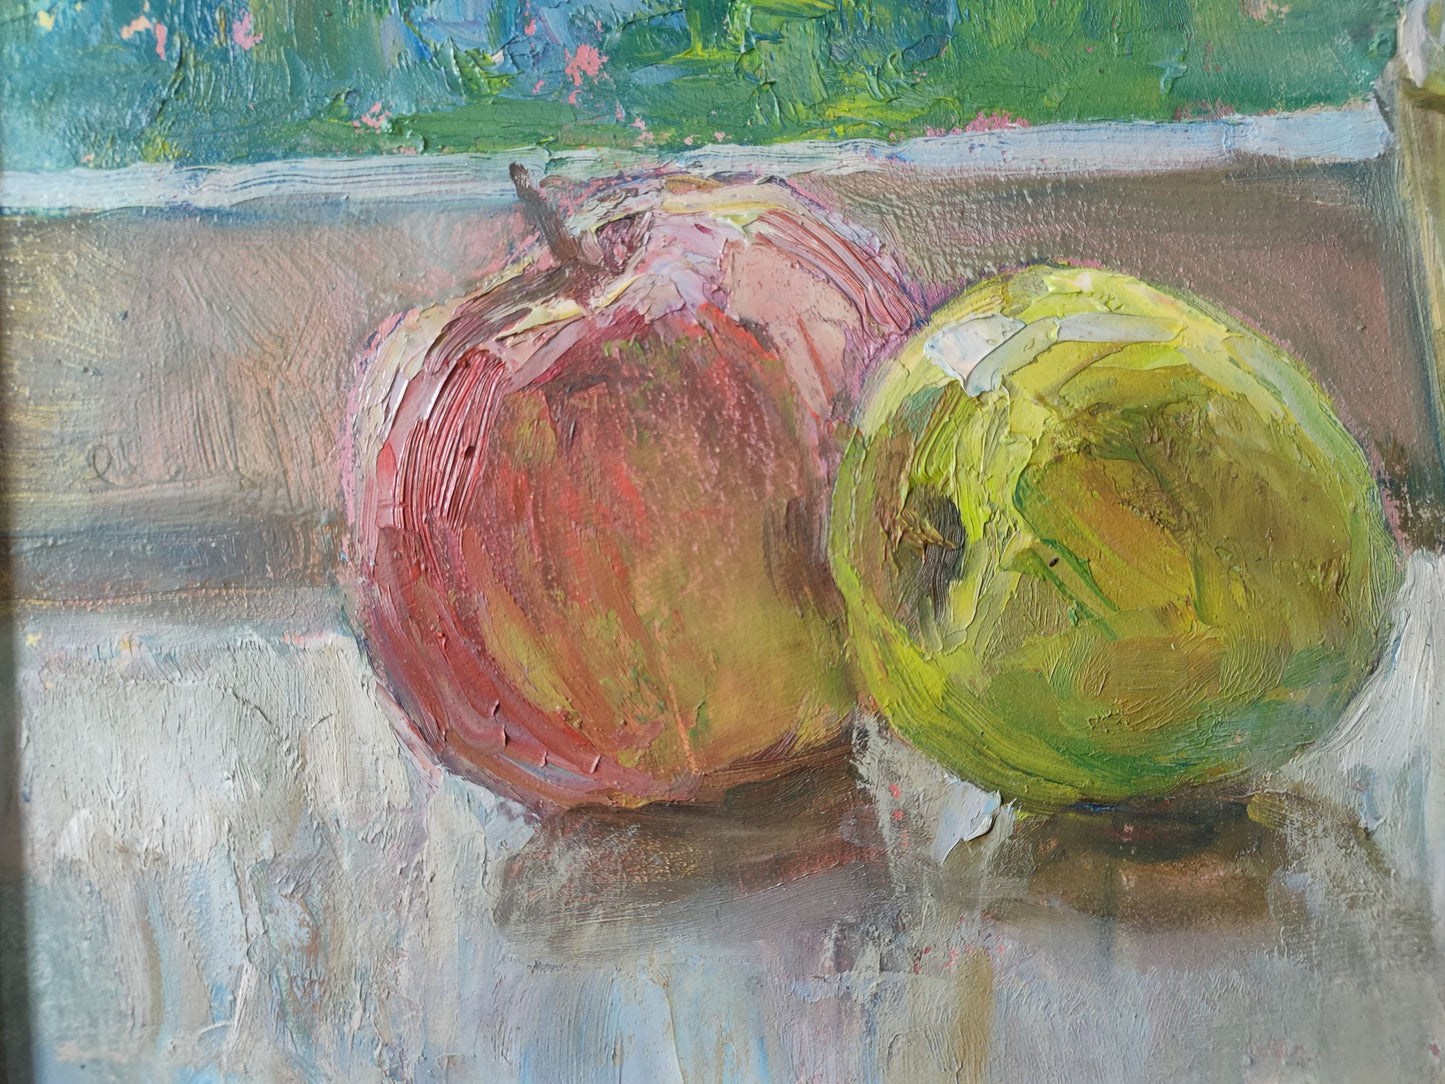 Oil painting Tulips and apples Mishurovsky V. V.